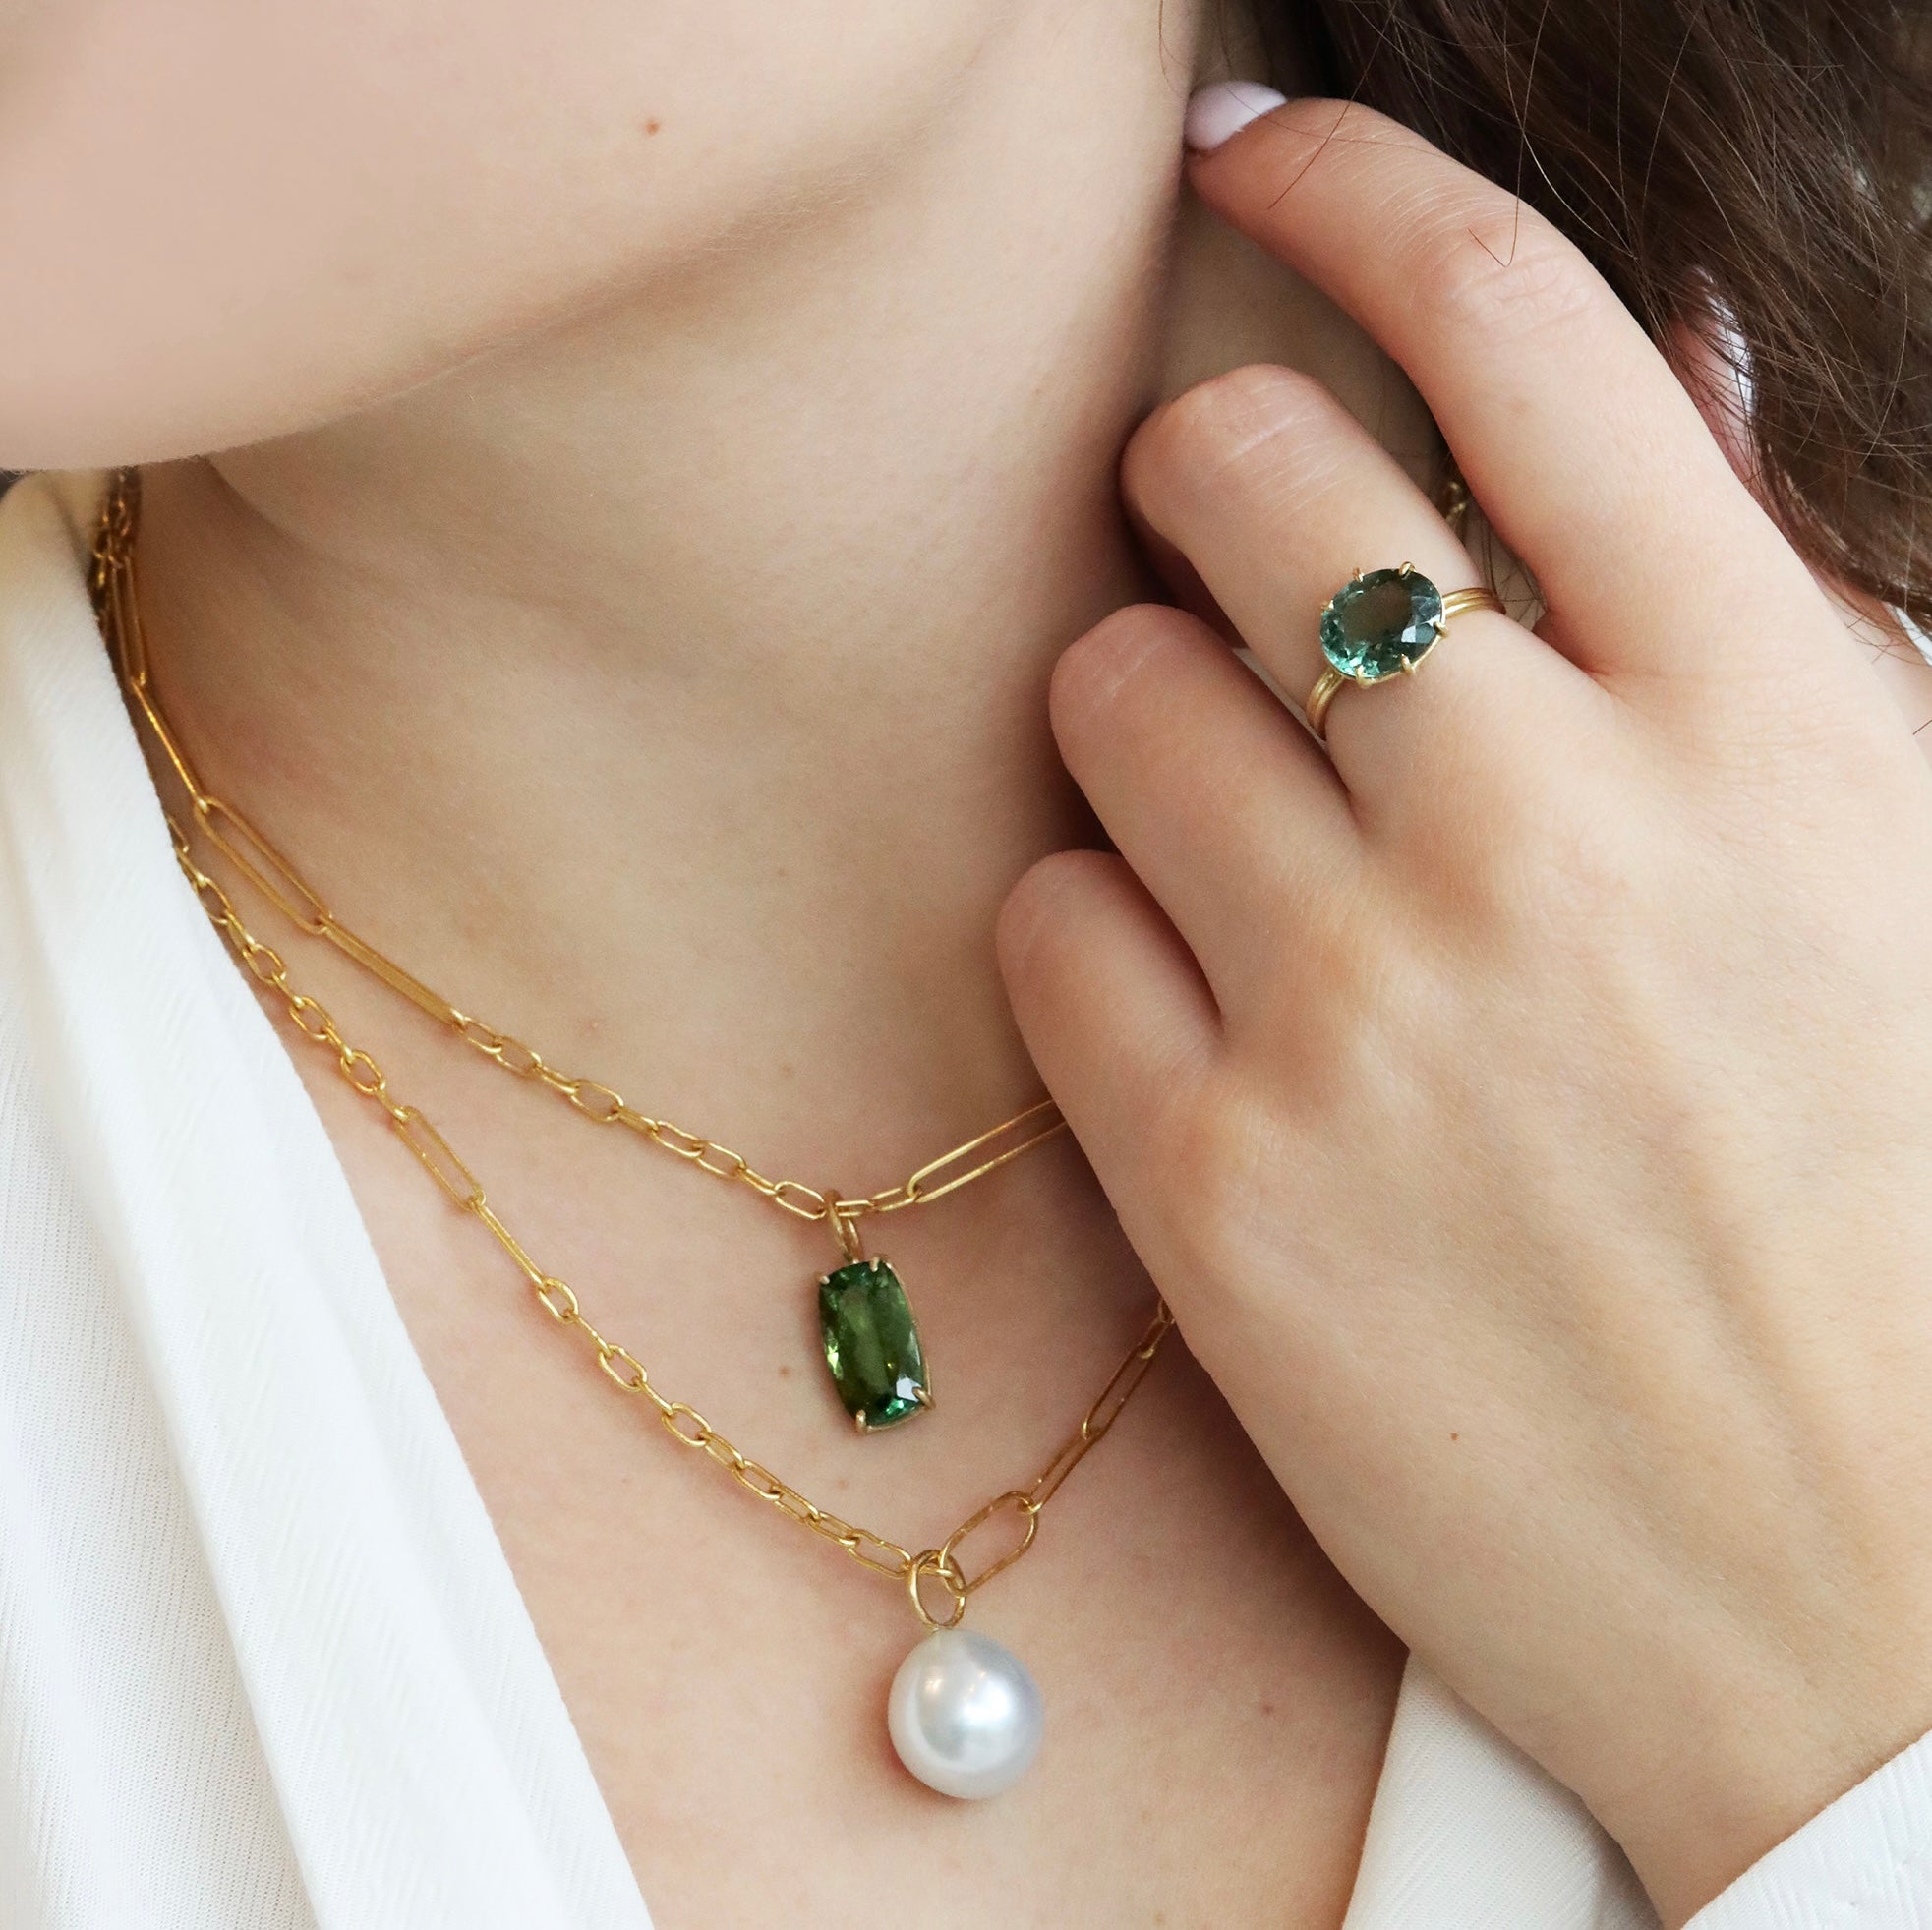 18K Gold Prong-Set Cushion-Cut Green Tourmaline Pendant - Peridot Fine Jewelry - Rosanne Pugliese